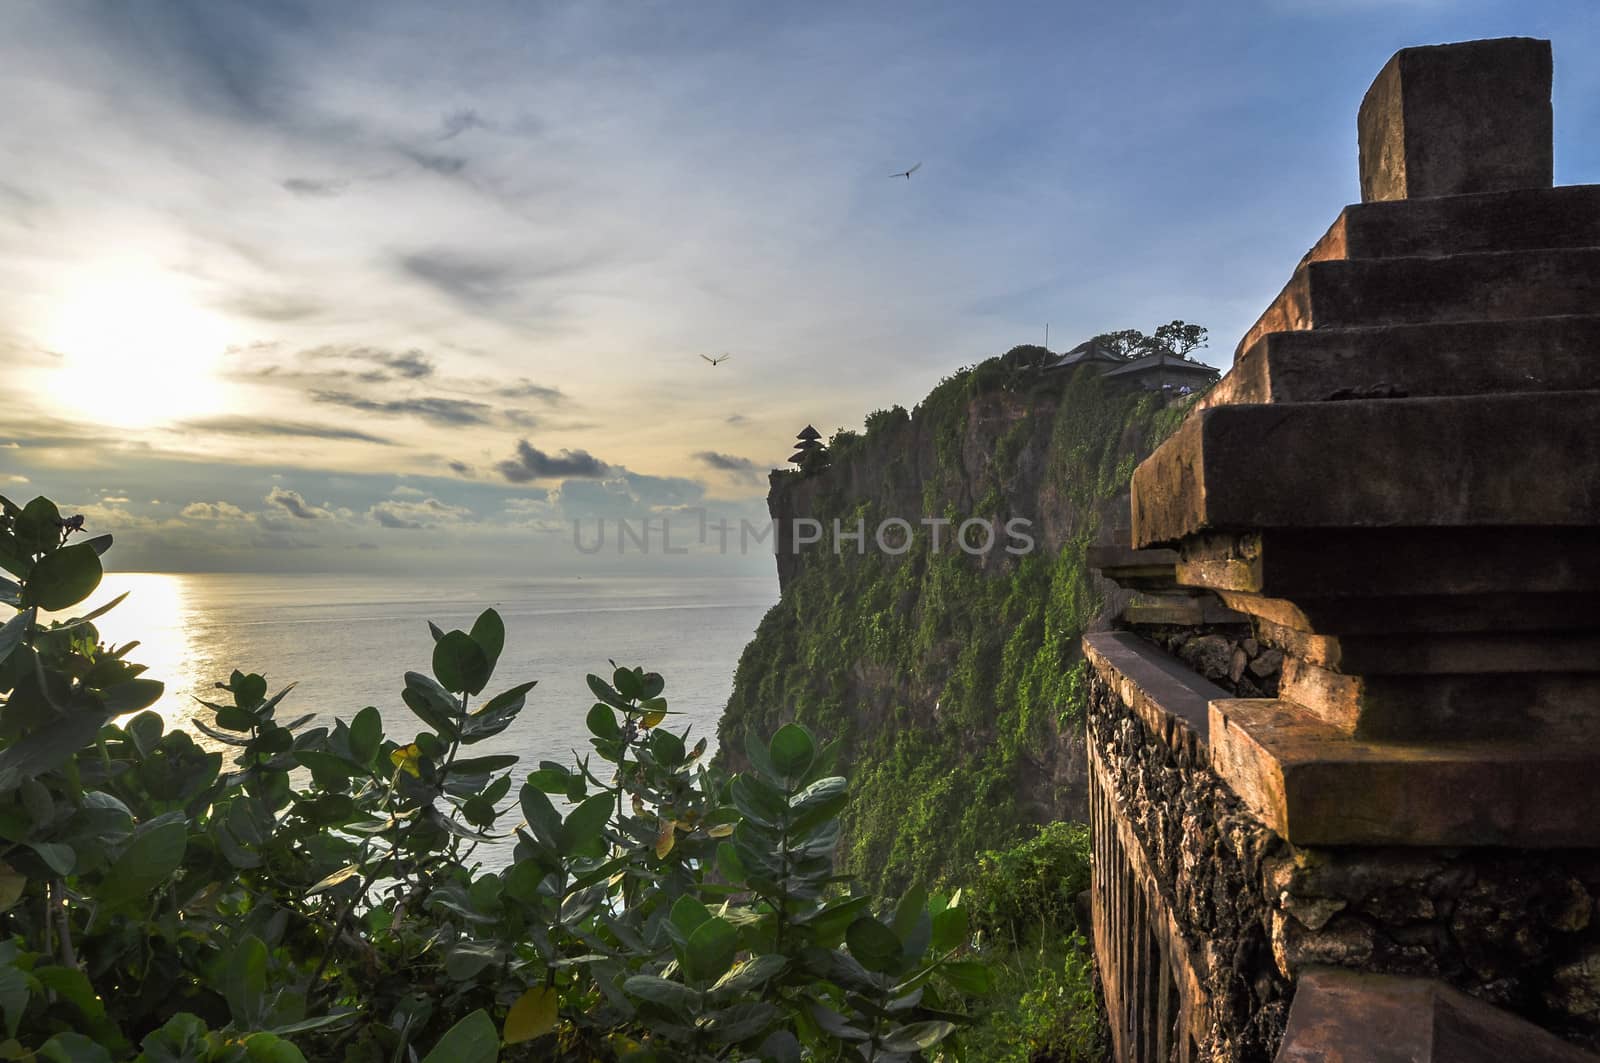 Bali Indonesia  by weltreisendertj